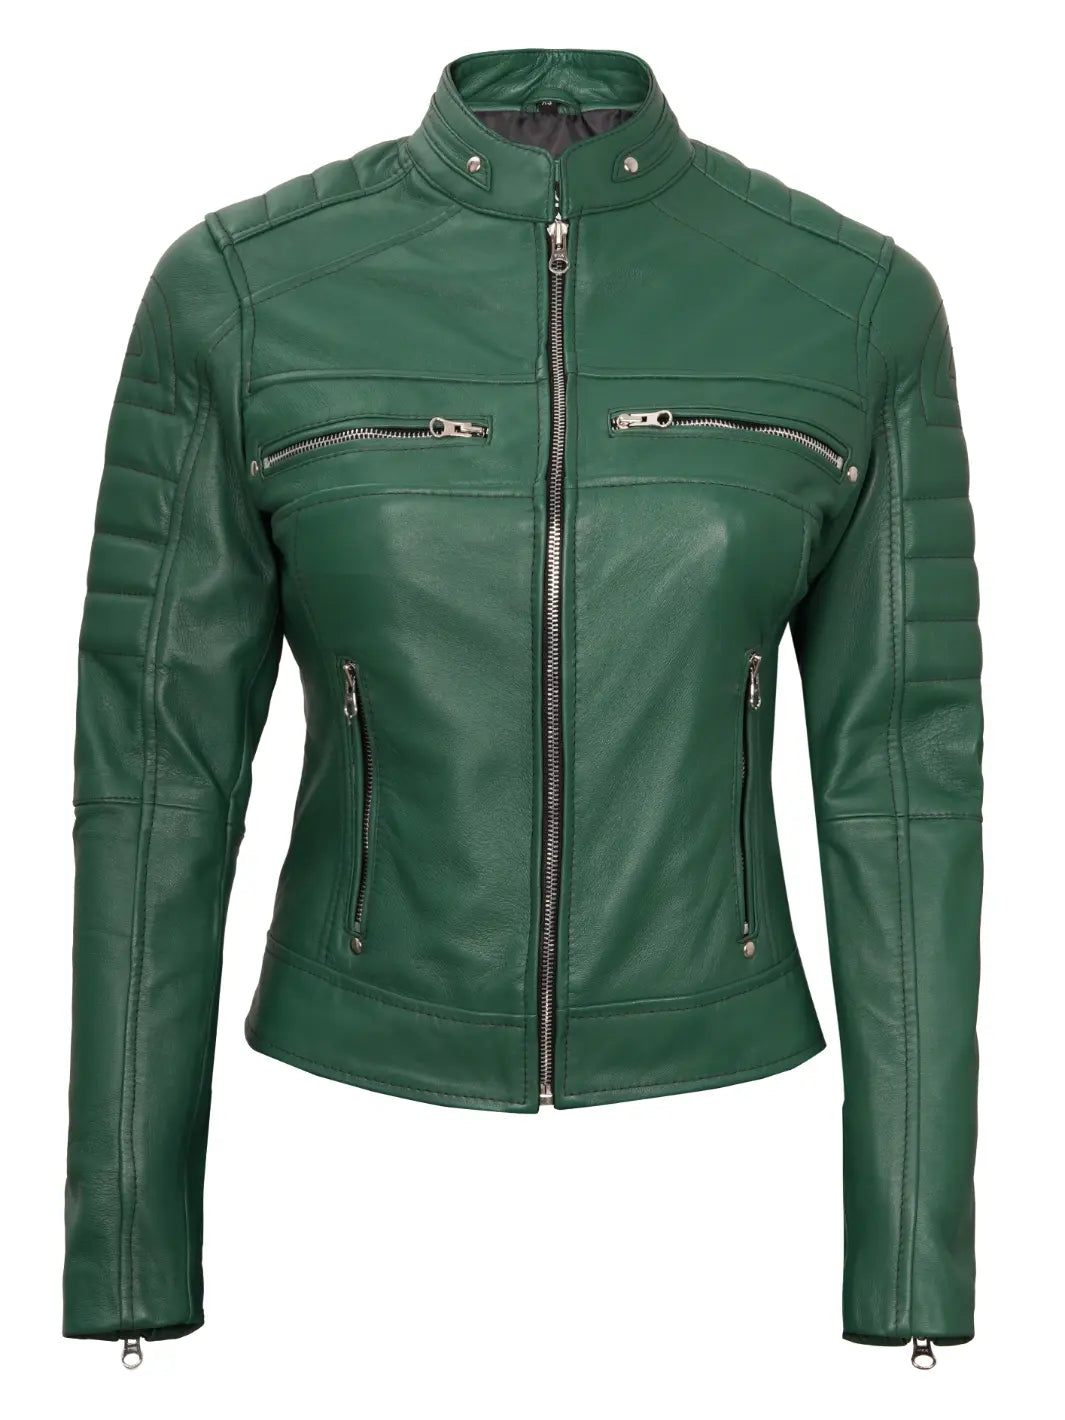 Women green leather jacket